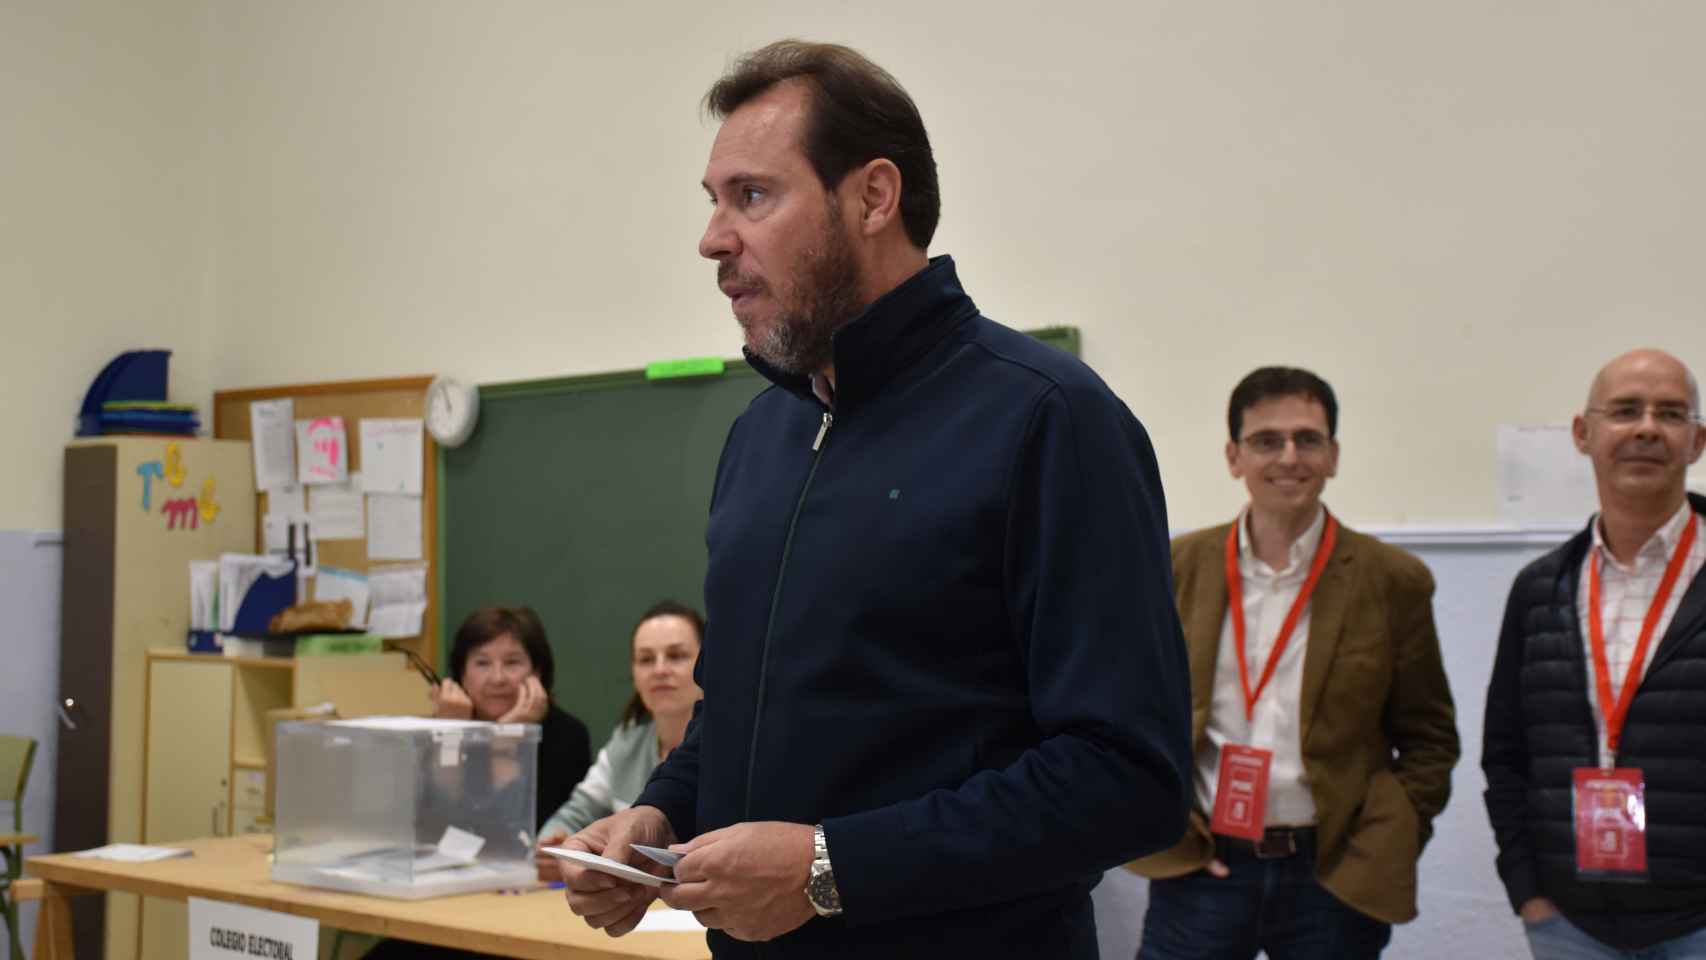 El candidato socialista, Óscar Puente, esperando para votar